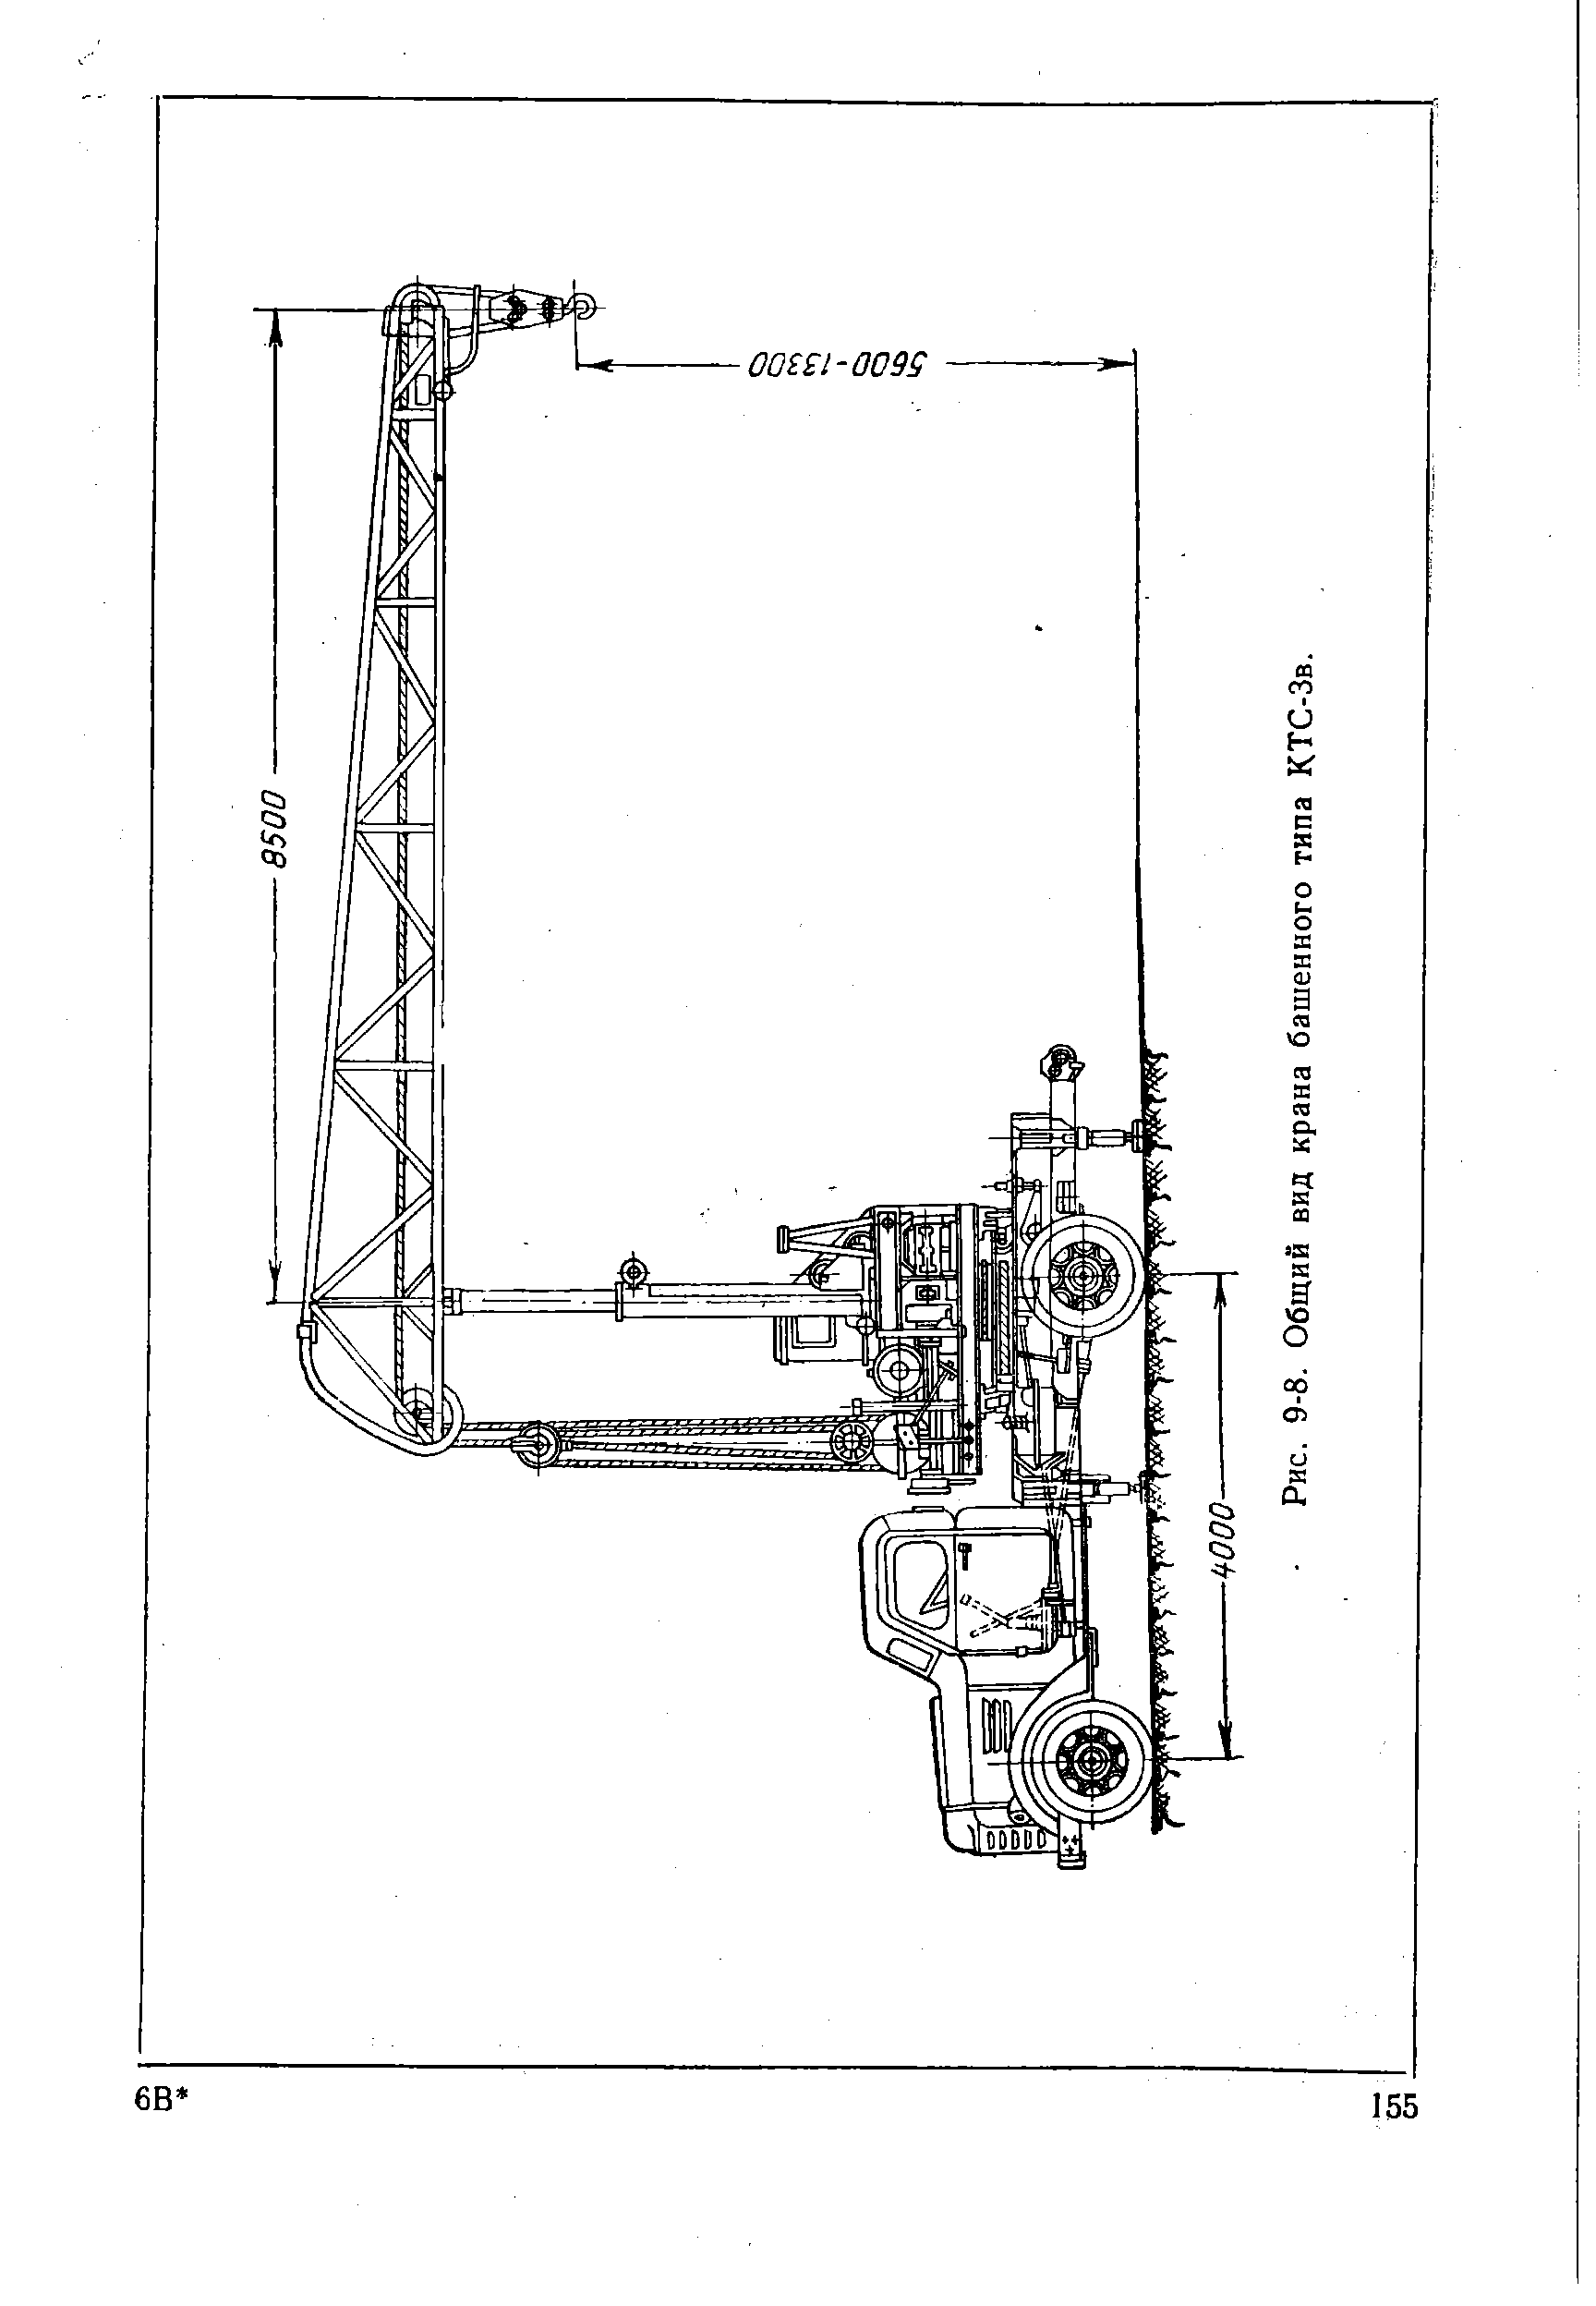 Рис. 9-8. Общий вид крана башенного типа КТС-Зв.
